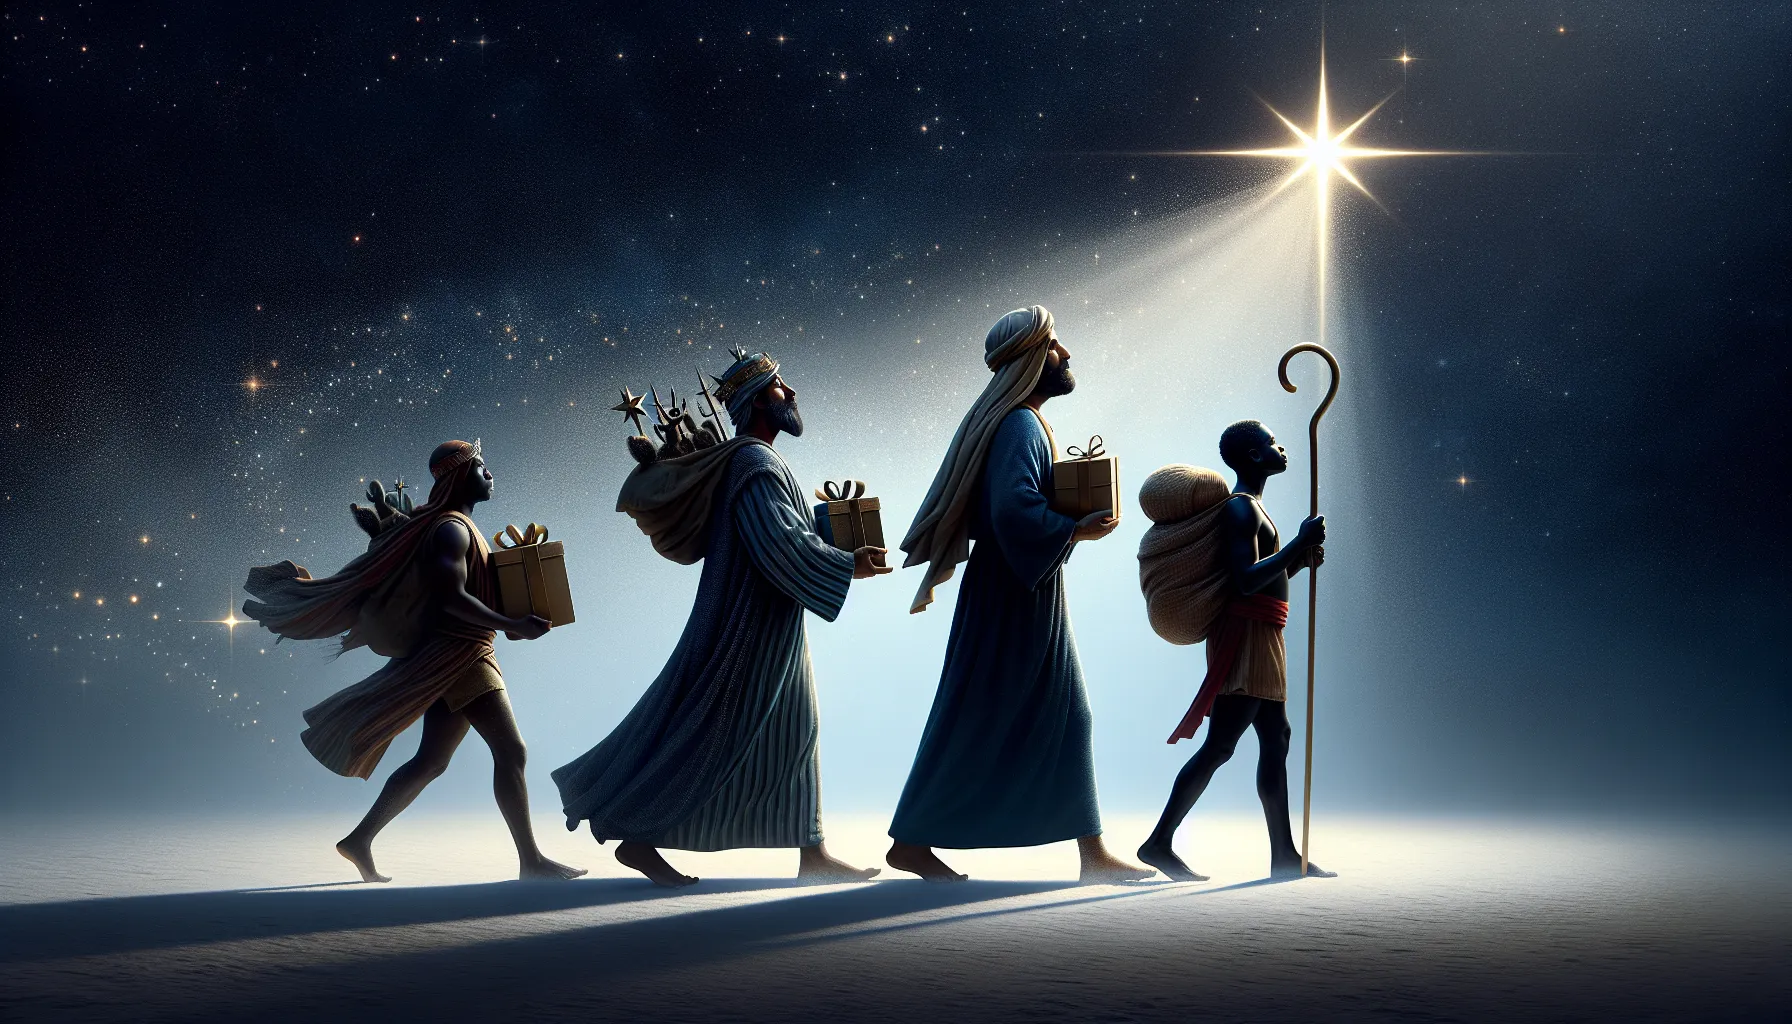 Imagen de tres figuras llevando regalos y siguiendo una estrella brillante en el cielo